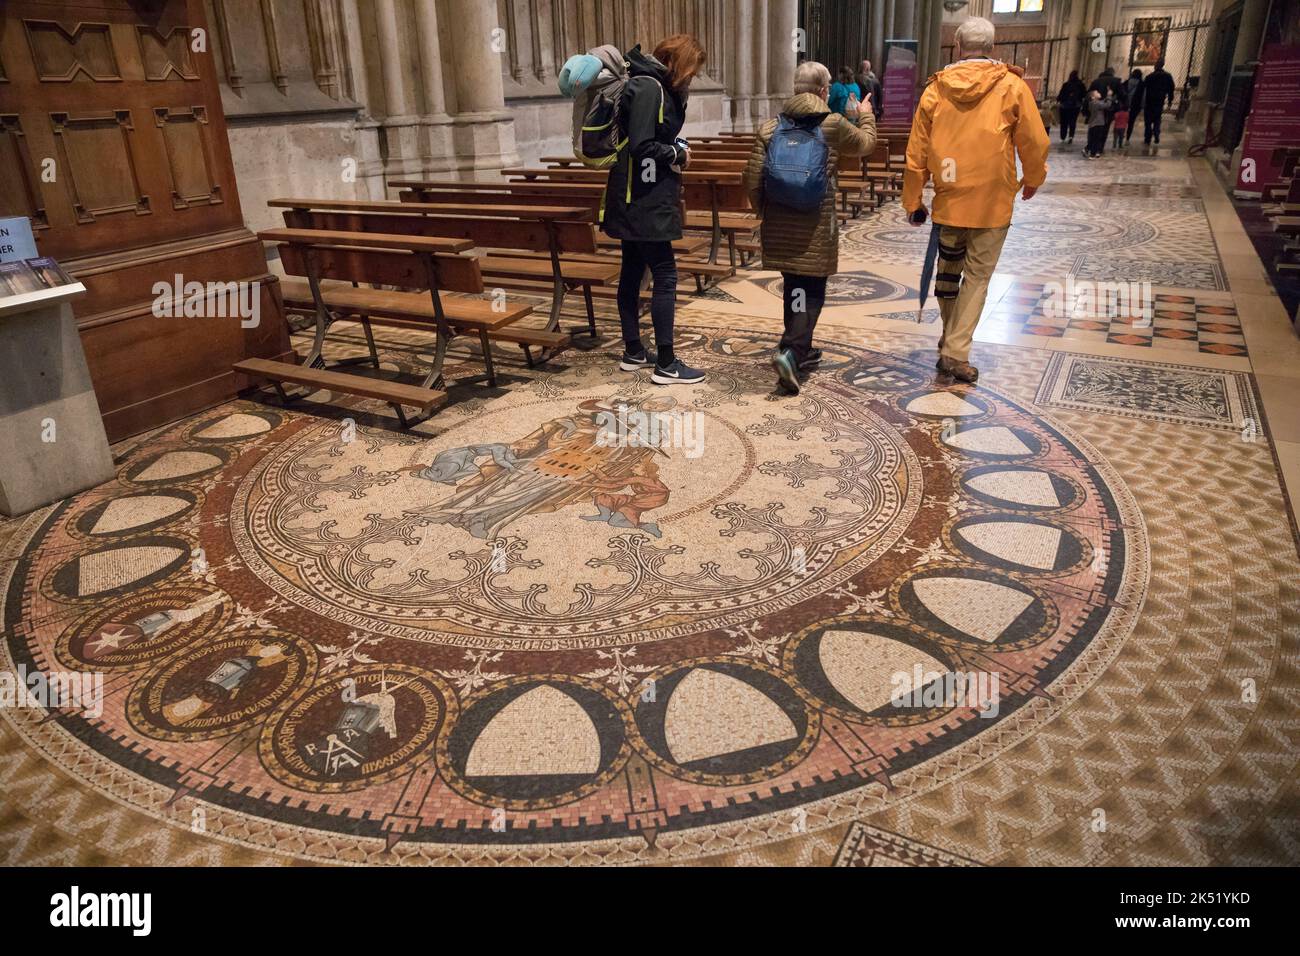 Mosaïque de sol dans la galerie de choeurs de la cathédrale, Cologne, Allemagne. Bodenmodaik im Chorumgang im Dom, Koeln, Allemagne. Banque D'Images